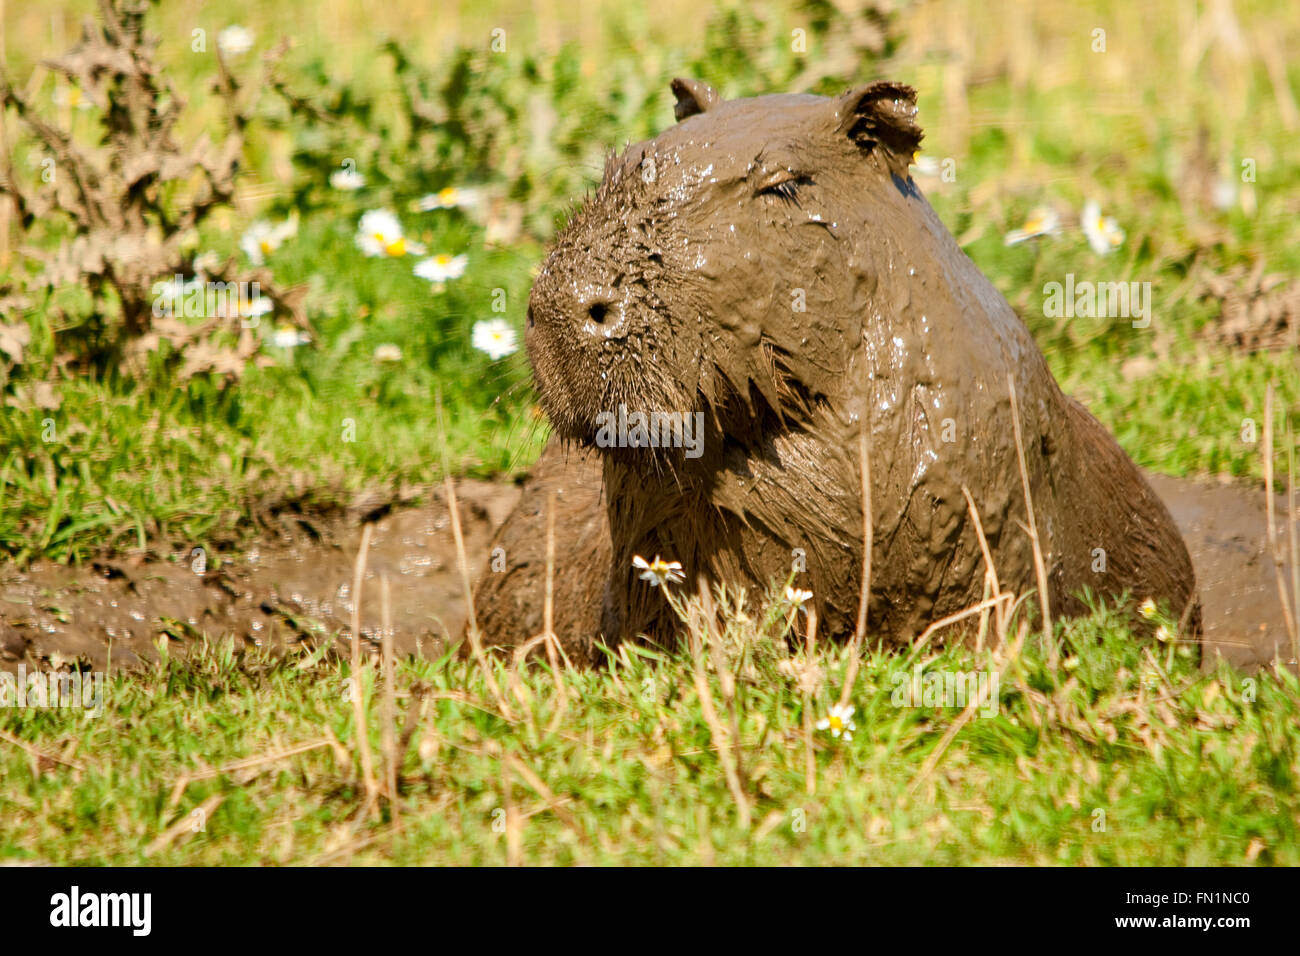 Capybara oder Hydrochoerus hydrochaeris vollständig Schlamm bedeckt nach dem Schwelen in dicken Schlamm ähnlich einer Schokolade Beschichtung. Schnurrhaare ragen durch Schlamm. Stockfoto